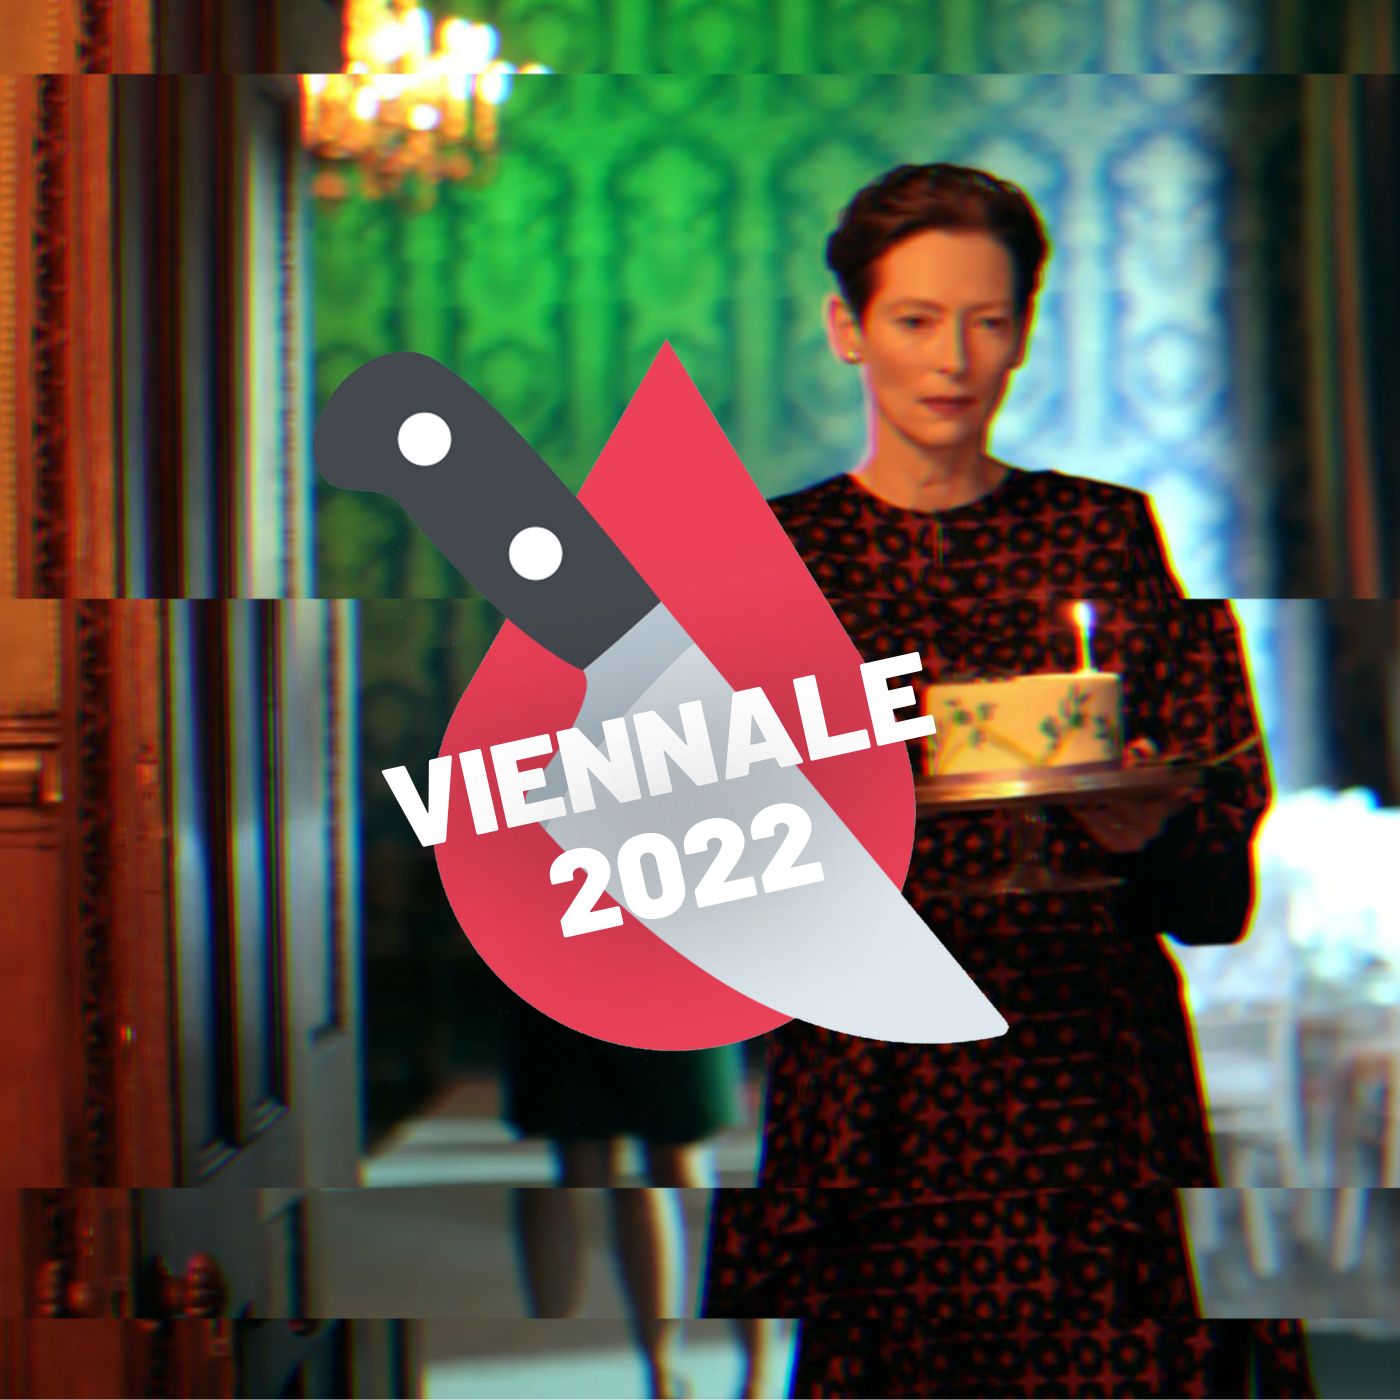 #123 - Viennale: Women Talking, Werner Herzog, The Eternal Daughter, Showing Up